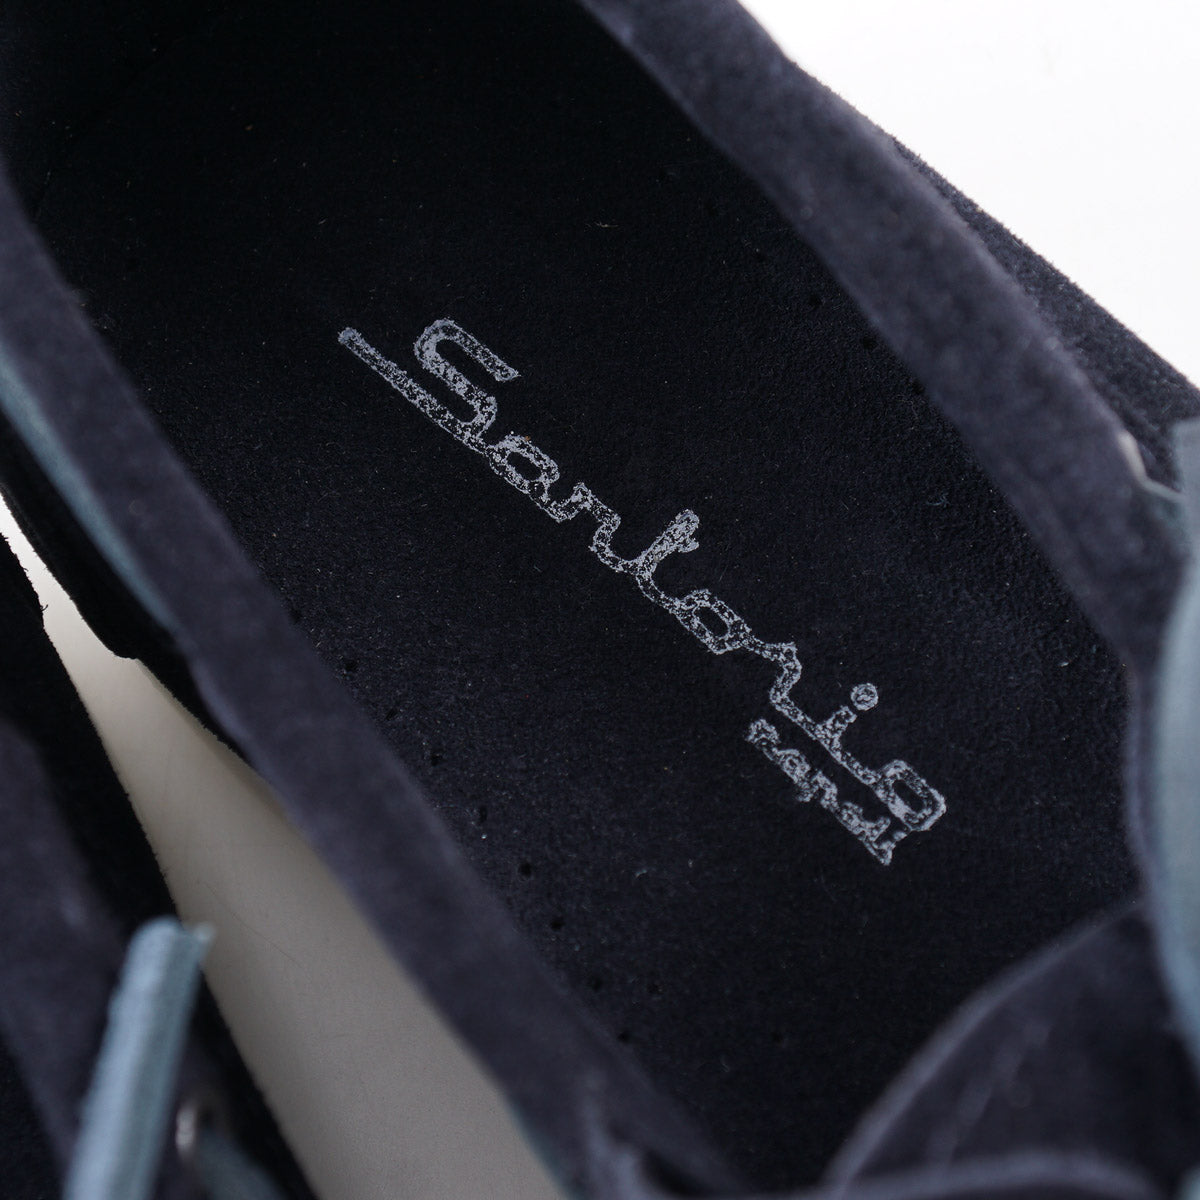 Sartorio Calf Suede Boat Shoes - Top Shelf Apparel